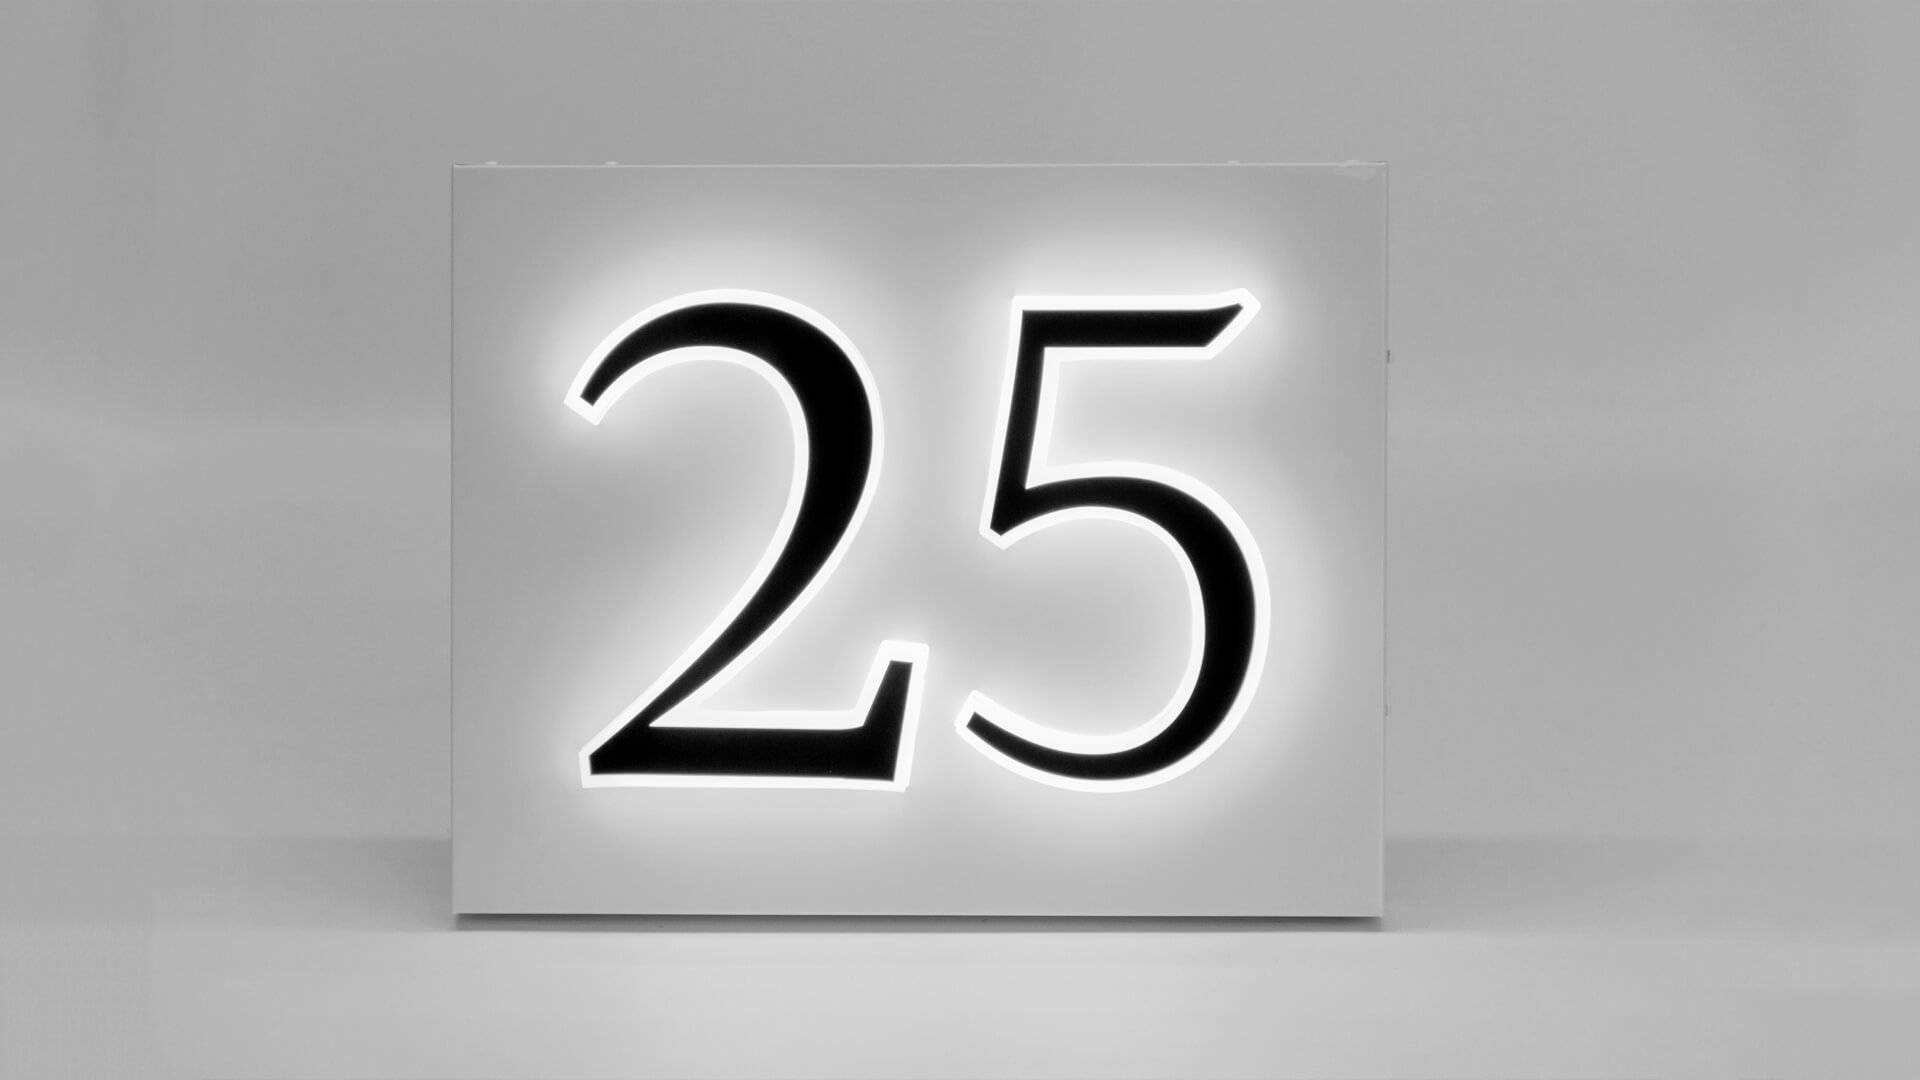 Nummering van de frames - Nummering van kooien, woongebouwen, verlichte LED's